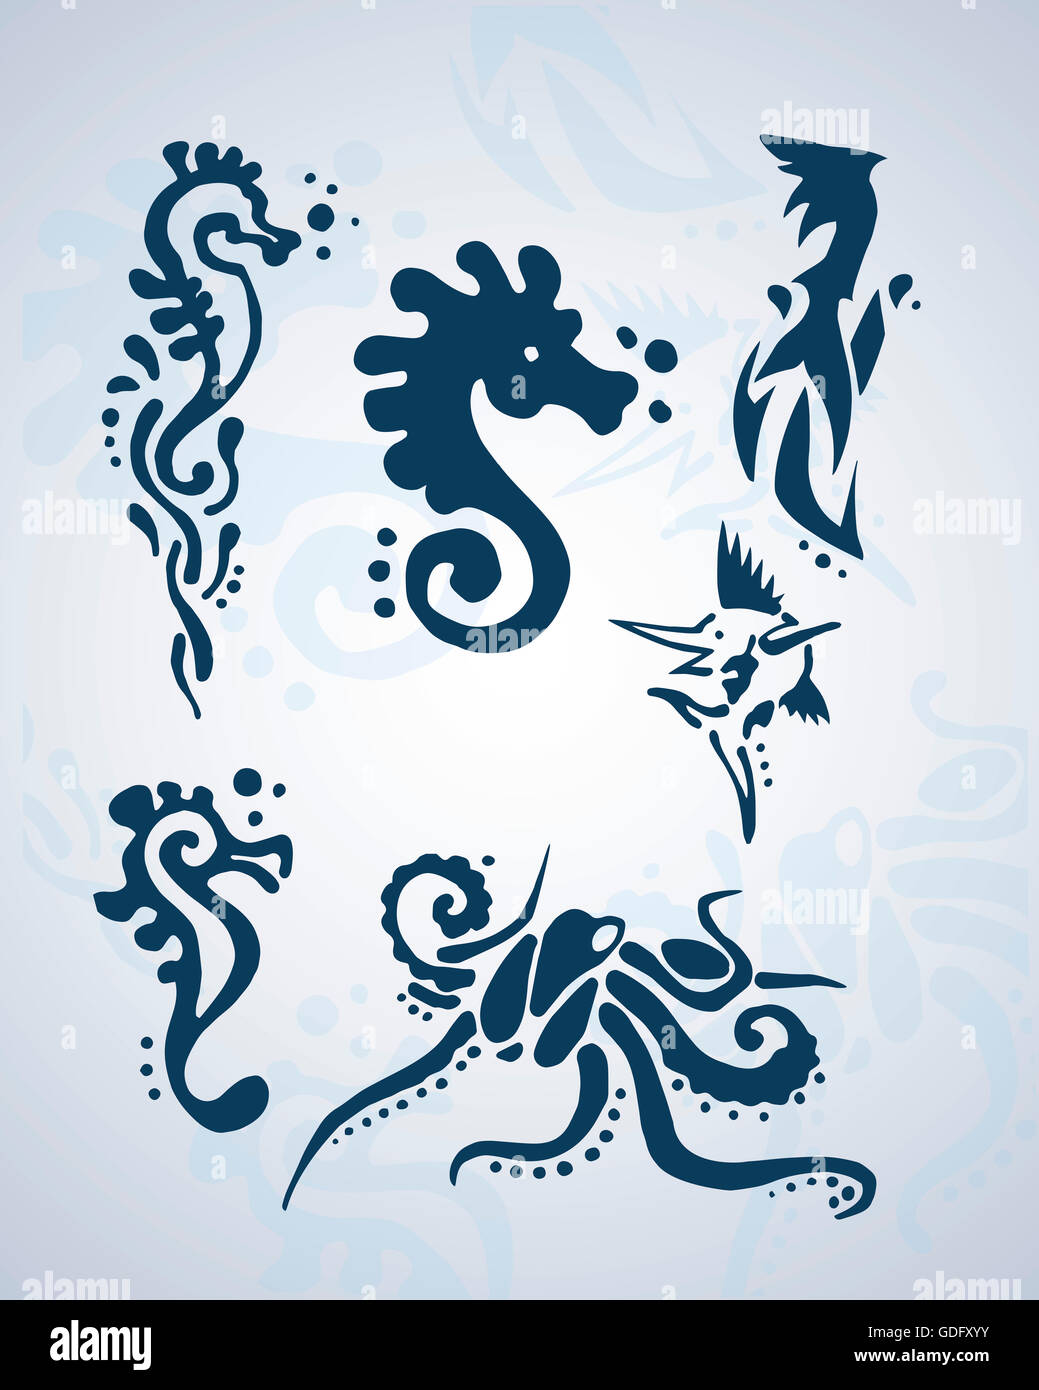 Dibujadas a mano ilustración o dibujo de diferentes animales del mar Foto de stock